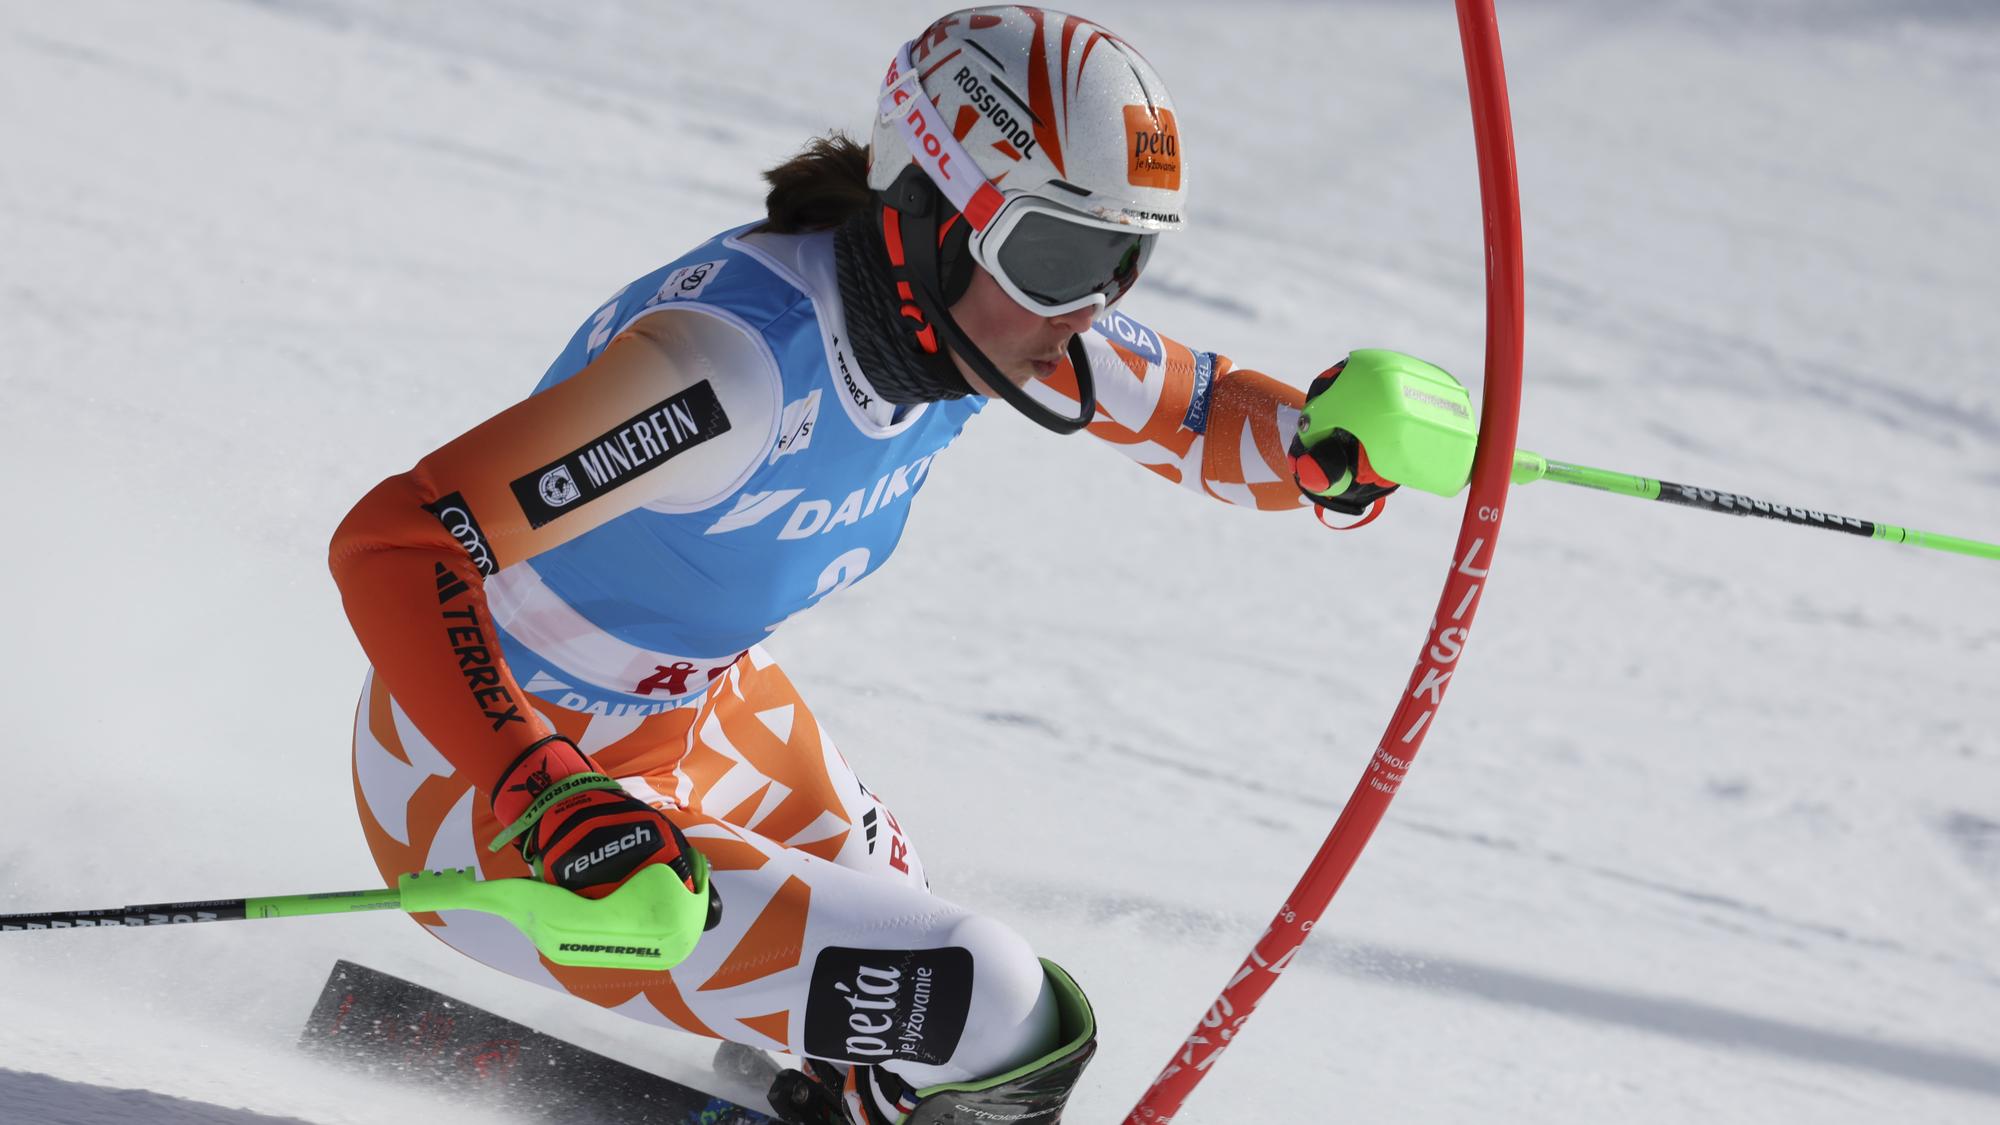 LIVE : Petra Vlhová dnes 2 kolo - slalom / Aare | Šport.sk